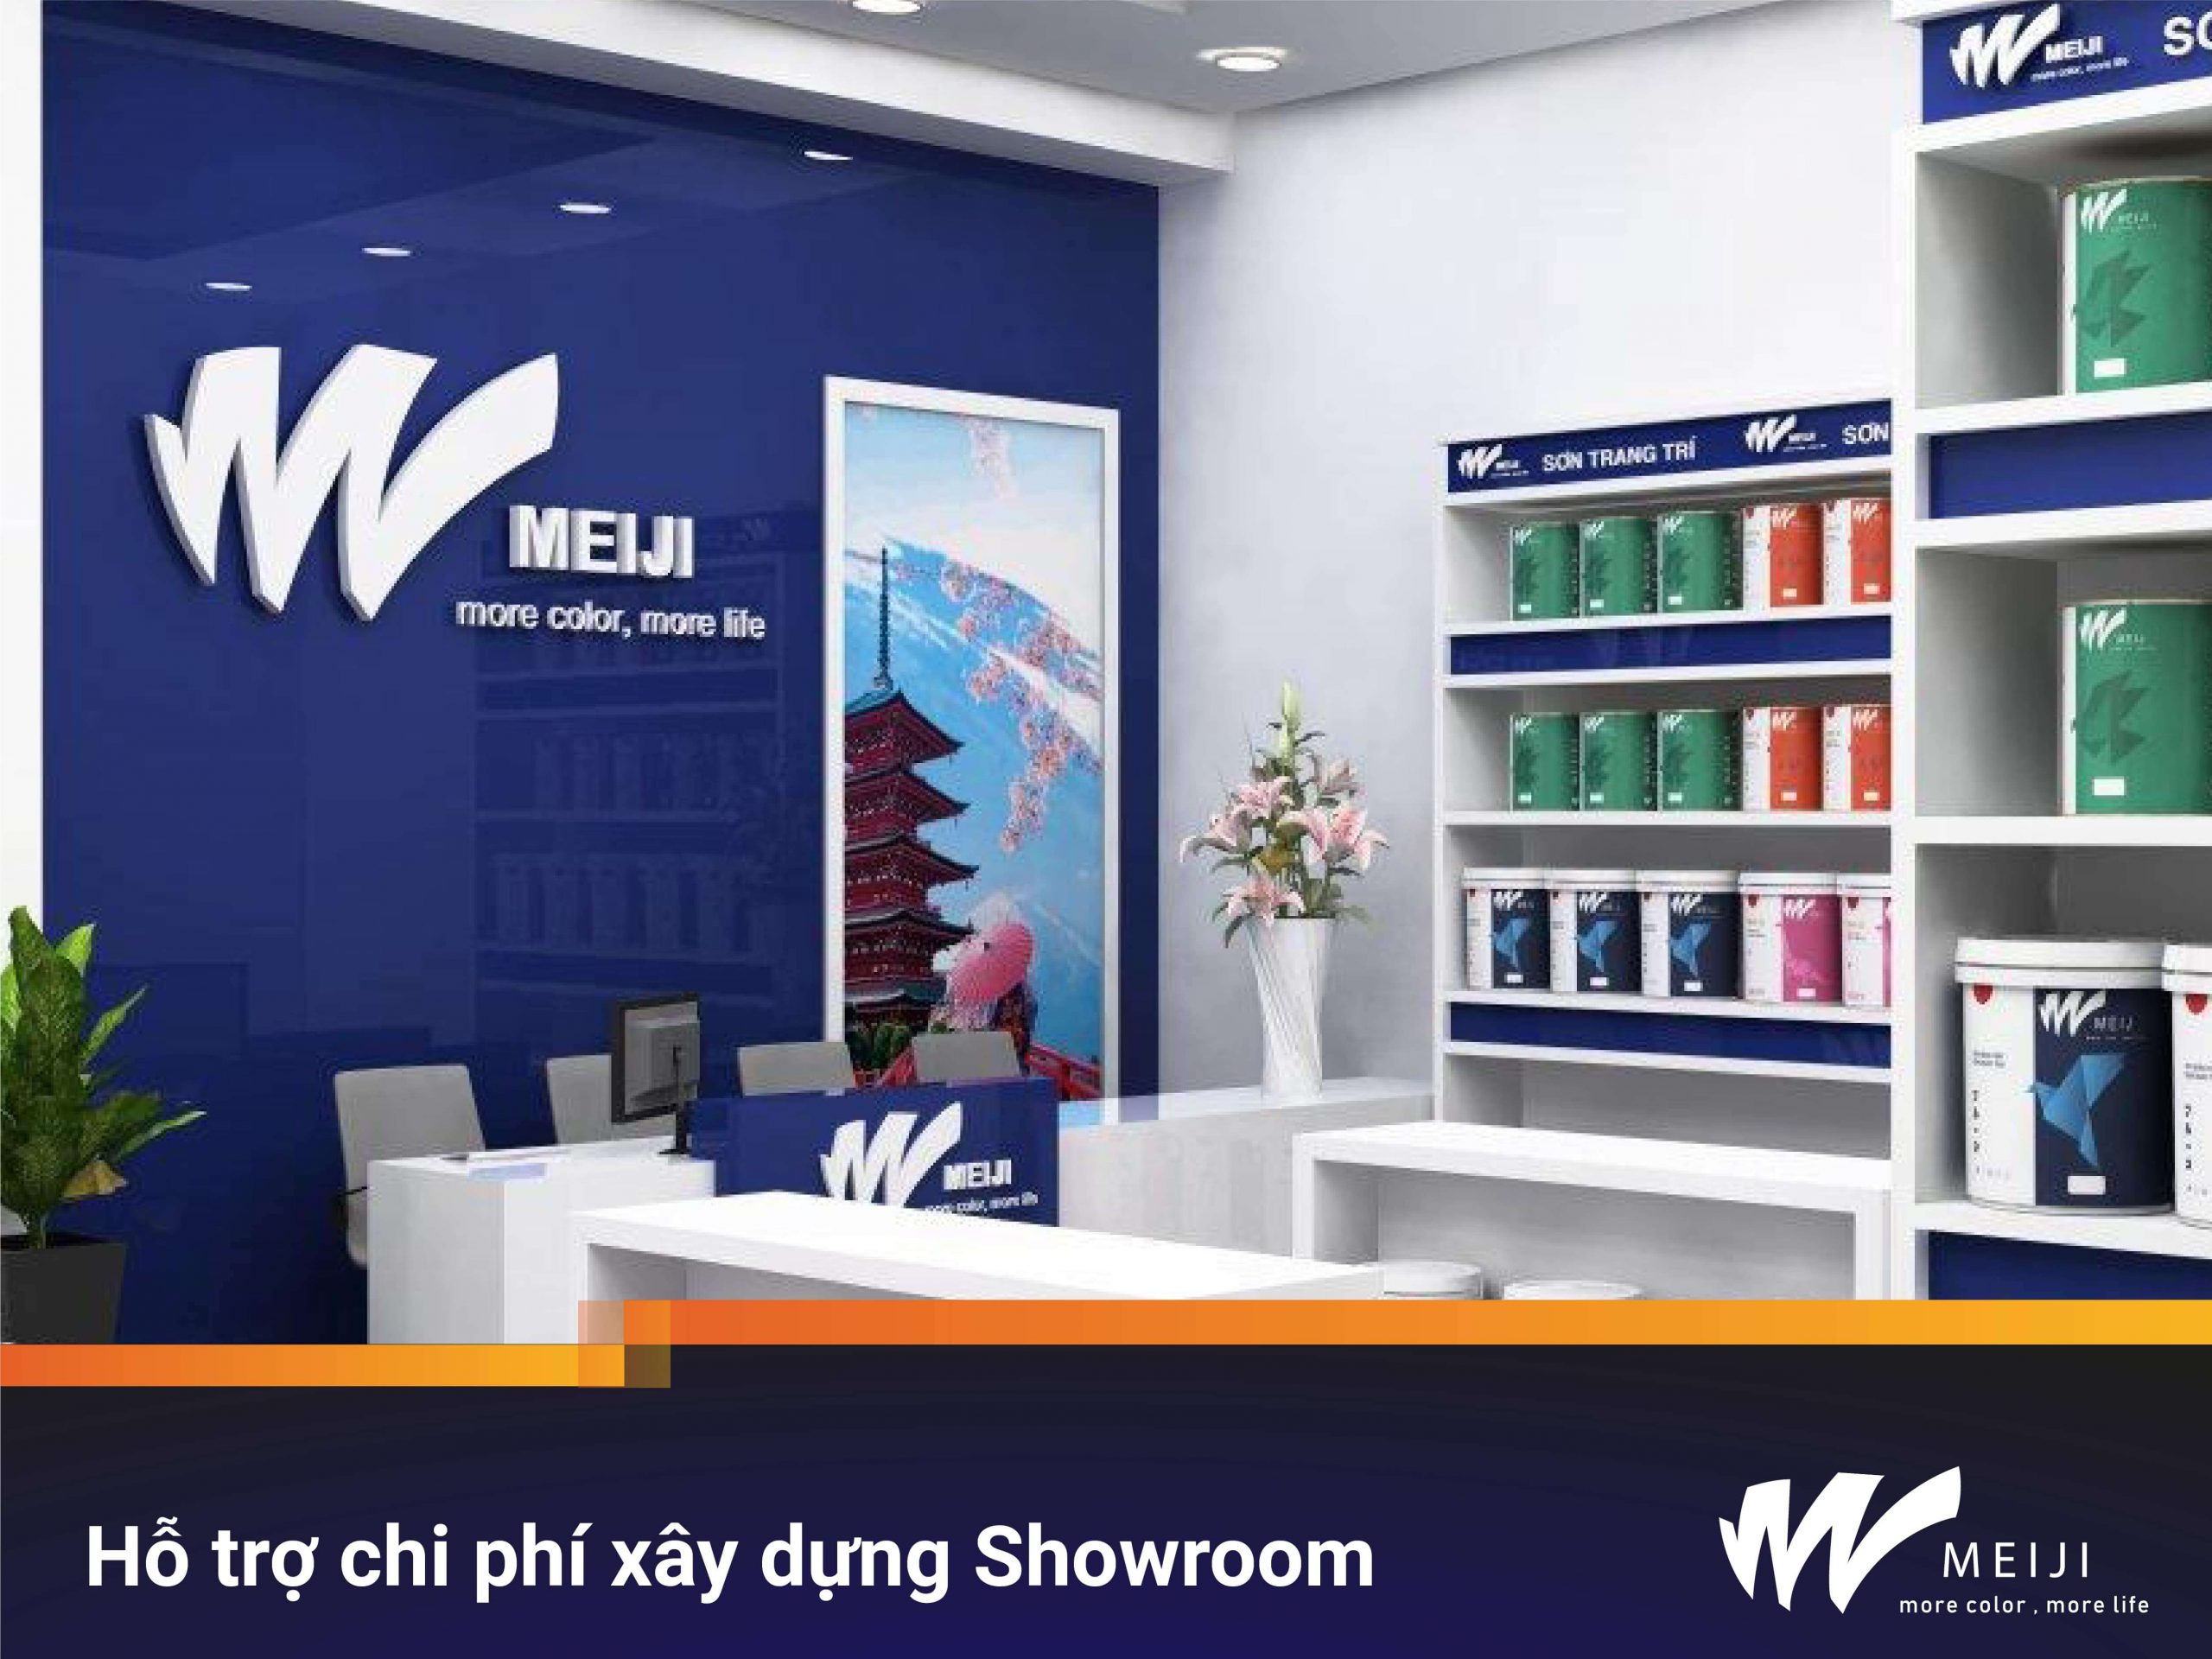 hỗ trợ chi phí xây dựng showroom khi phân phối sơn meiji